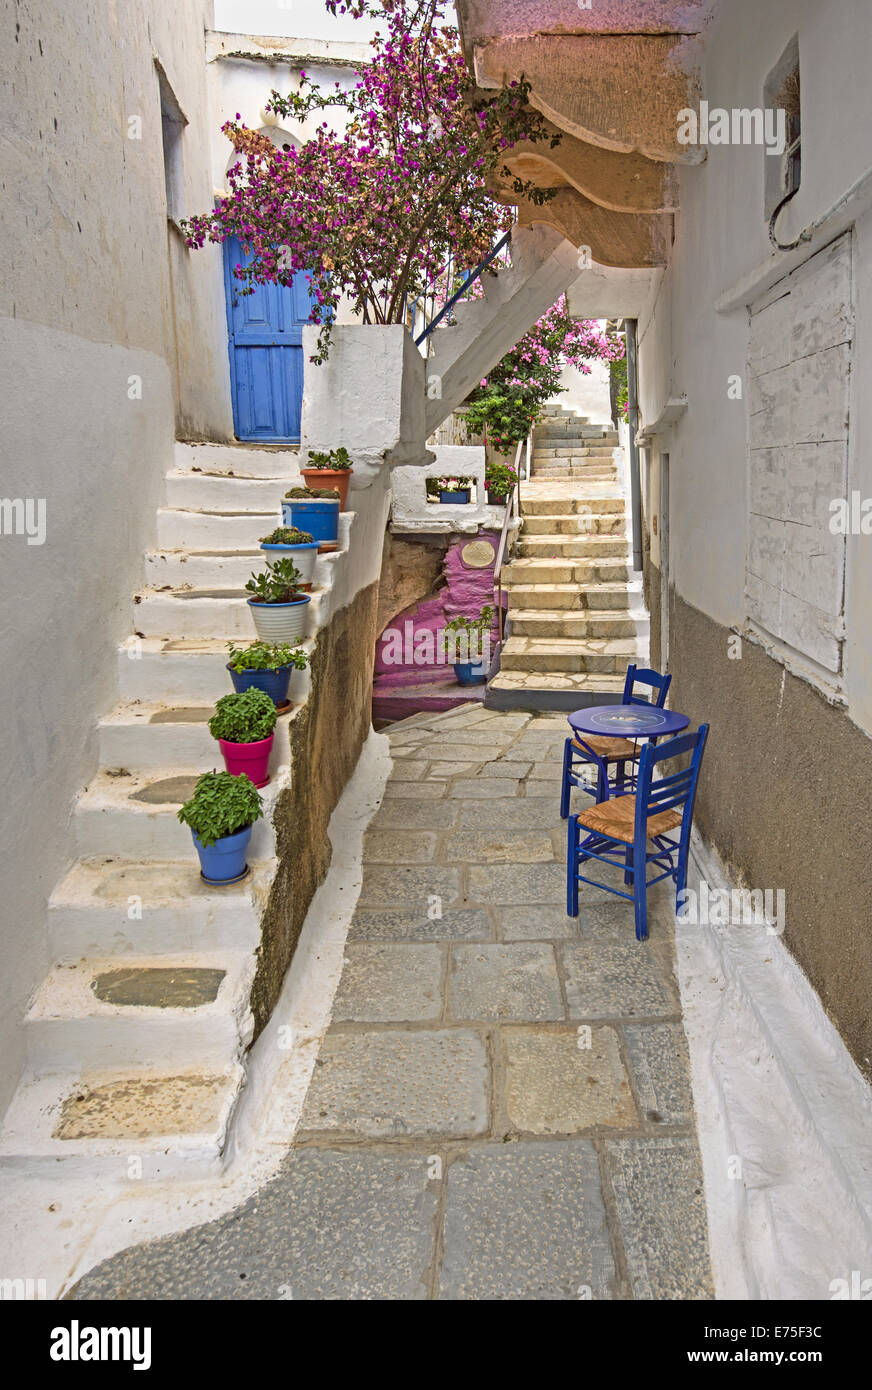 Une pittoresque ruelle pavée en pierre dans la ville médiévale de Kardiani traditionnels dans l'ile de Tinos, Cyclades, Grèce Banque D'Images